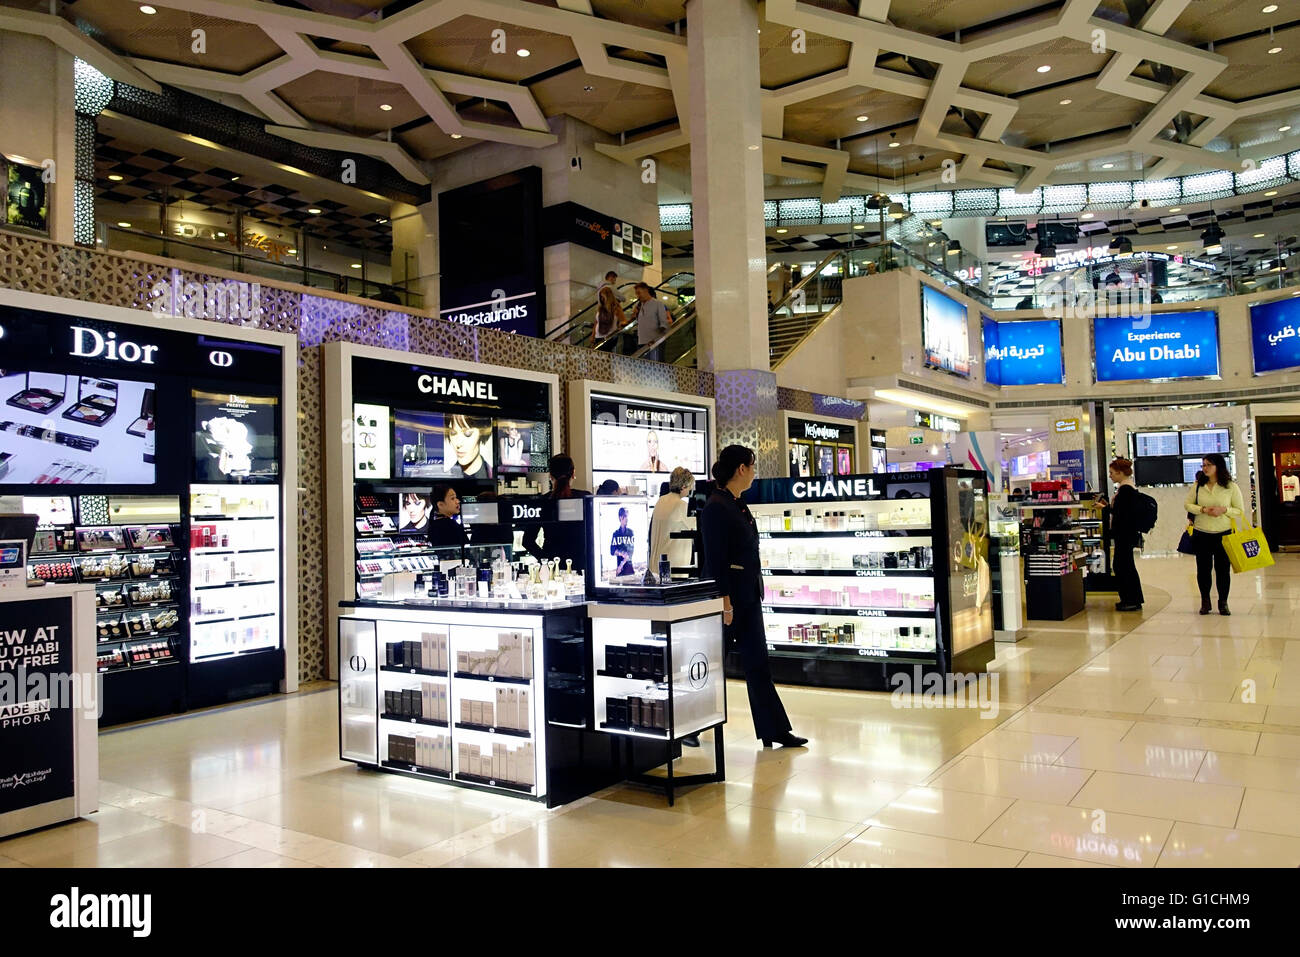 Flughafen Abu Dhabi. Duty free-Shop.   Vereinigte Arabische Emirate. Stockfoto